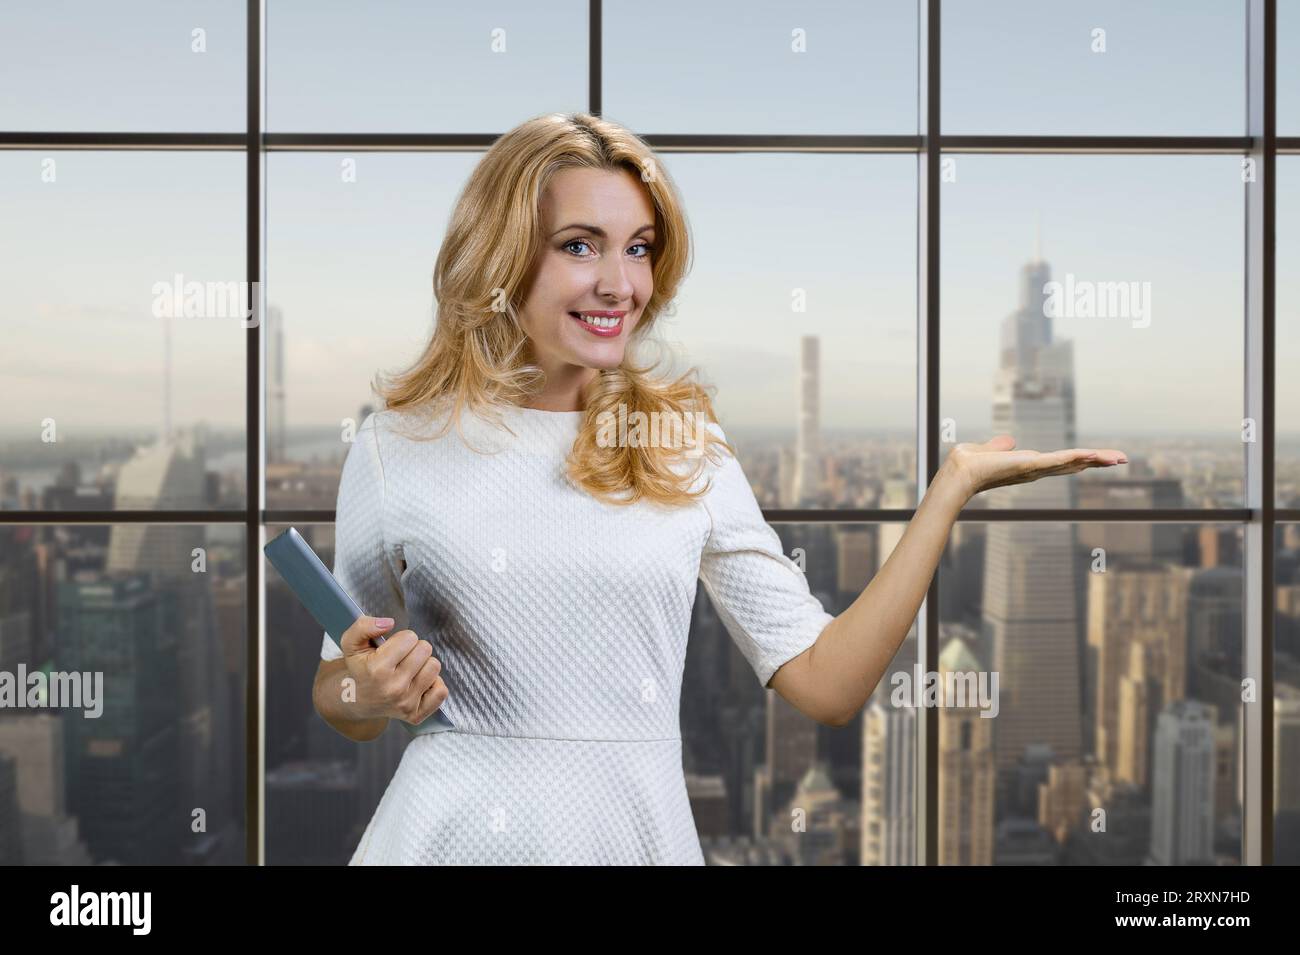 Lächelnde blonde, reife Frau mit Werbefläche für Tablets. Karierte Fenster mit Stadtbild im Hintergrund. Stockfoto